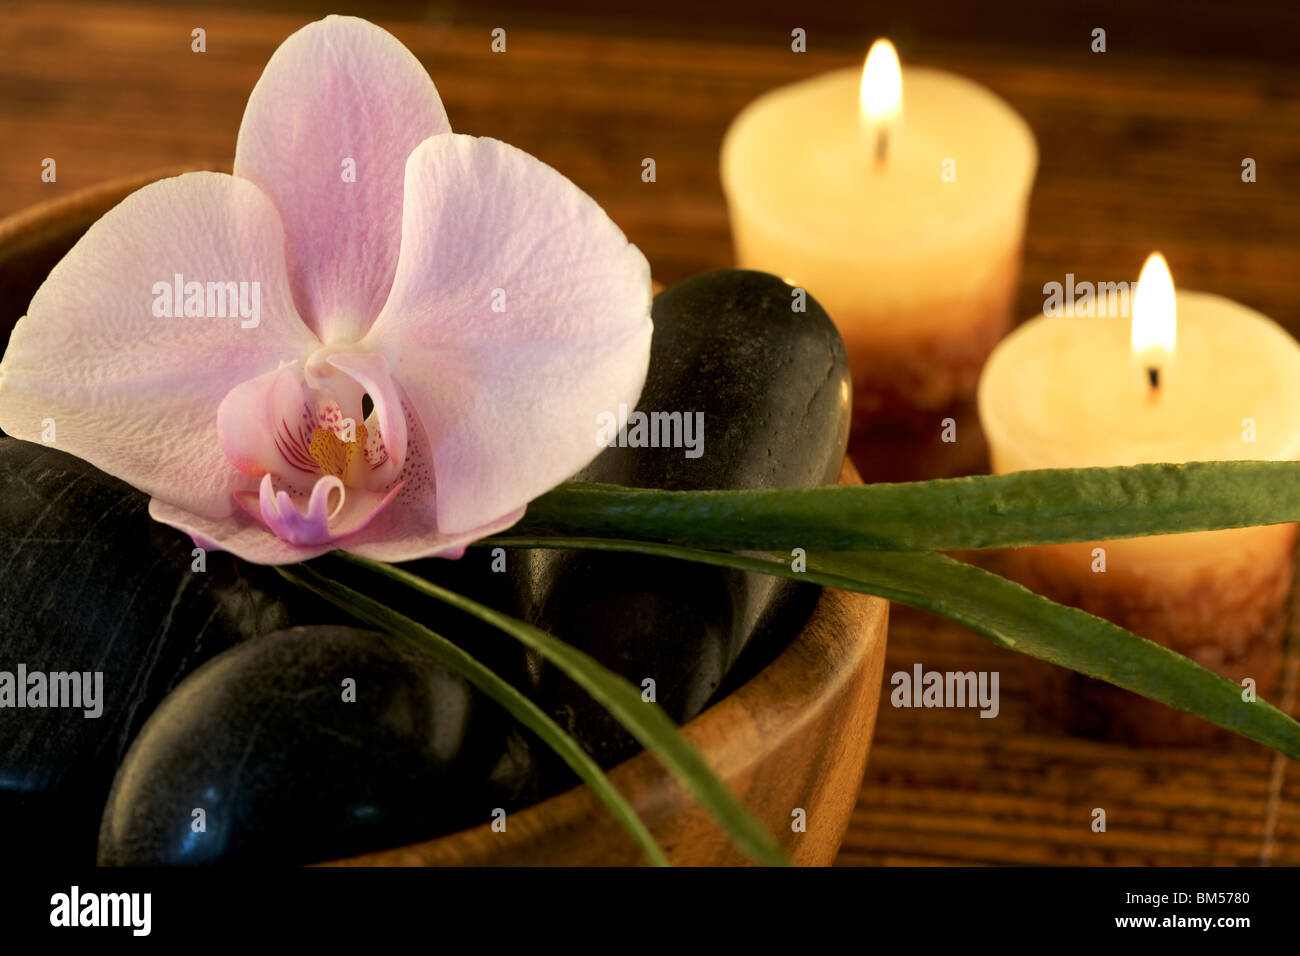 Zen-artige Szene mit Blumen und Kerzen Stockfoto